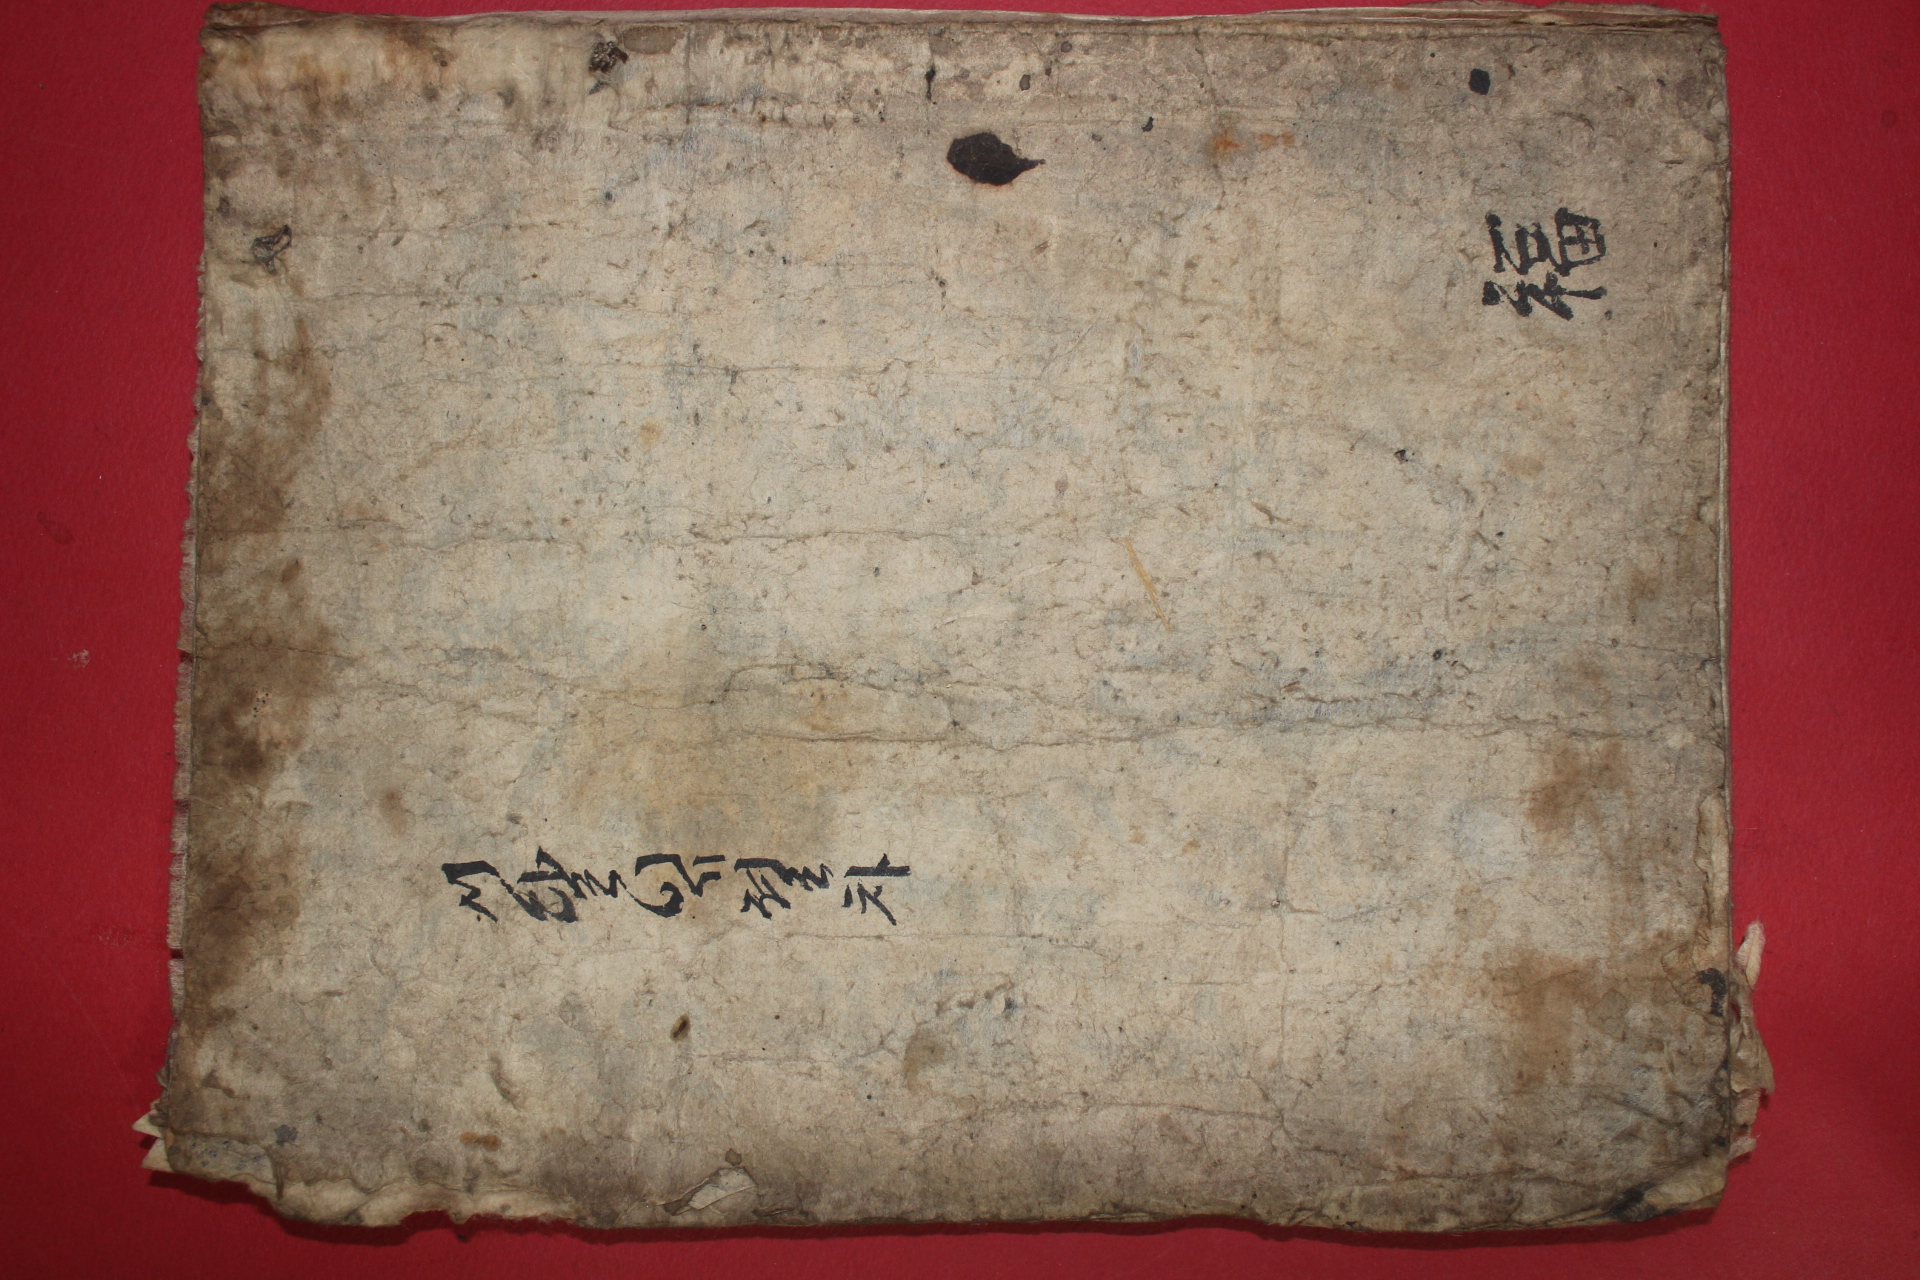 1670년(강희9년) 스님의 발문이 있는 목판본 승가예의문(僧家禮儀文) 1책완질